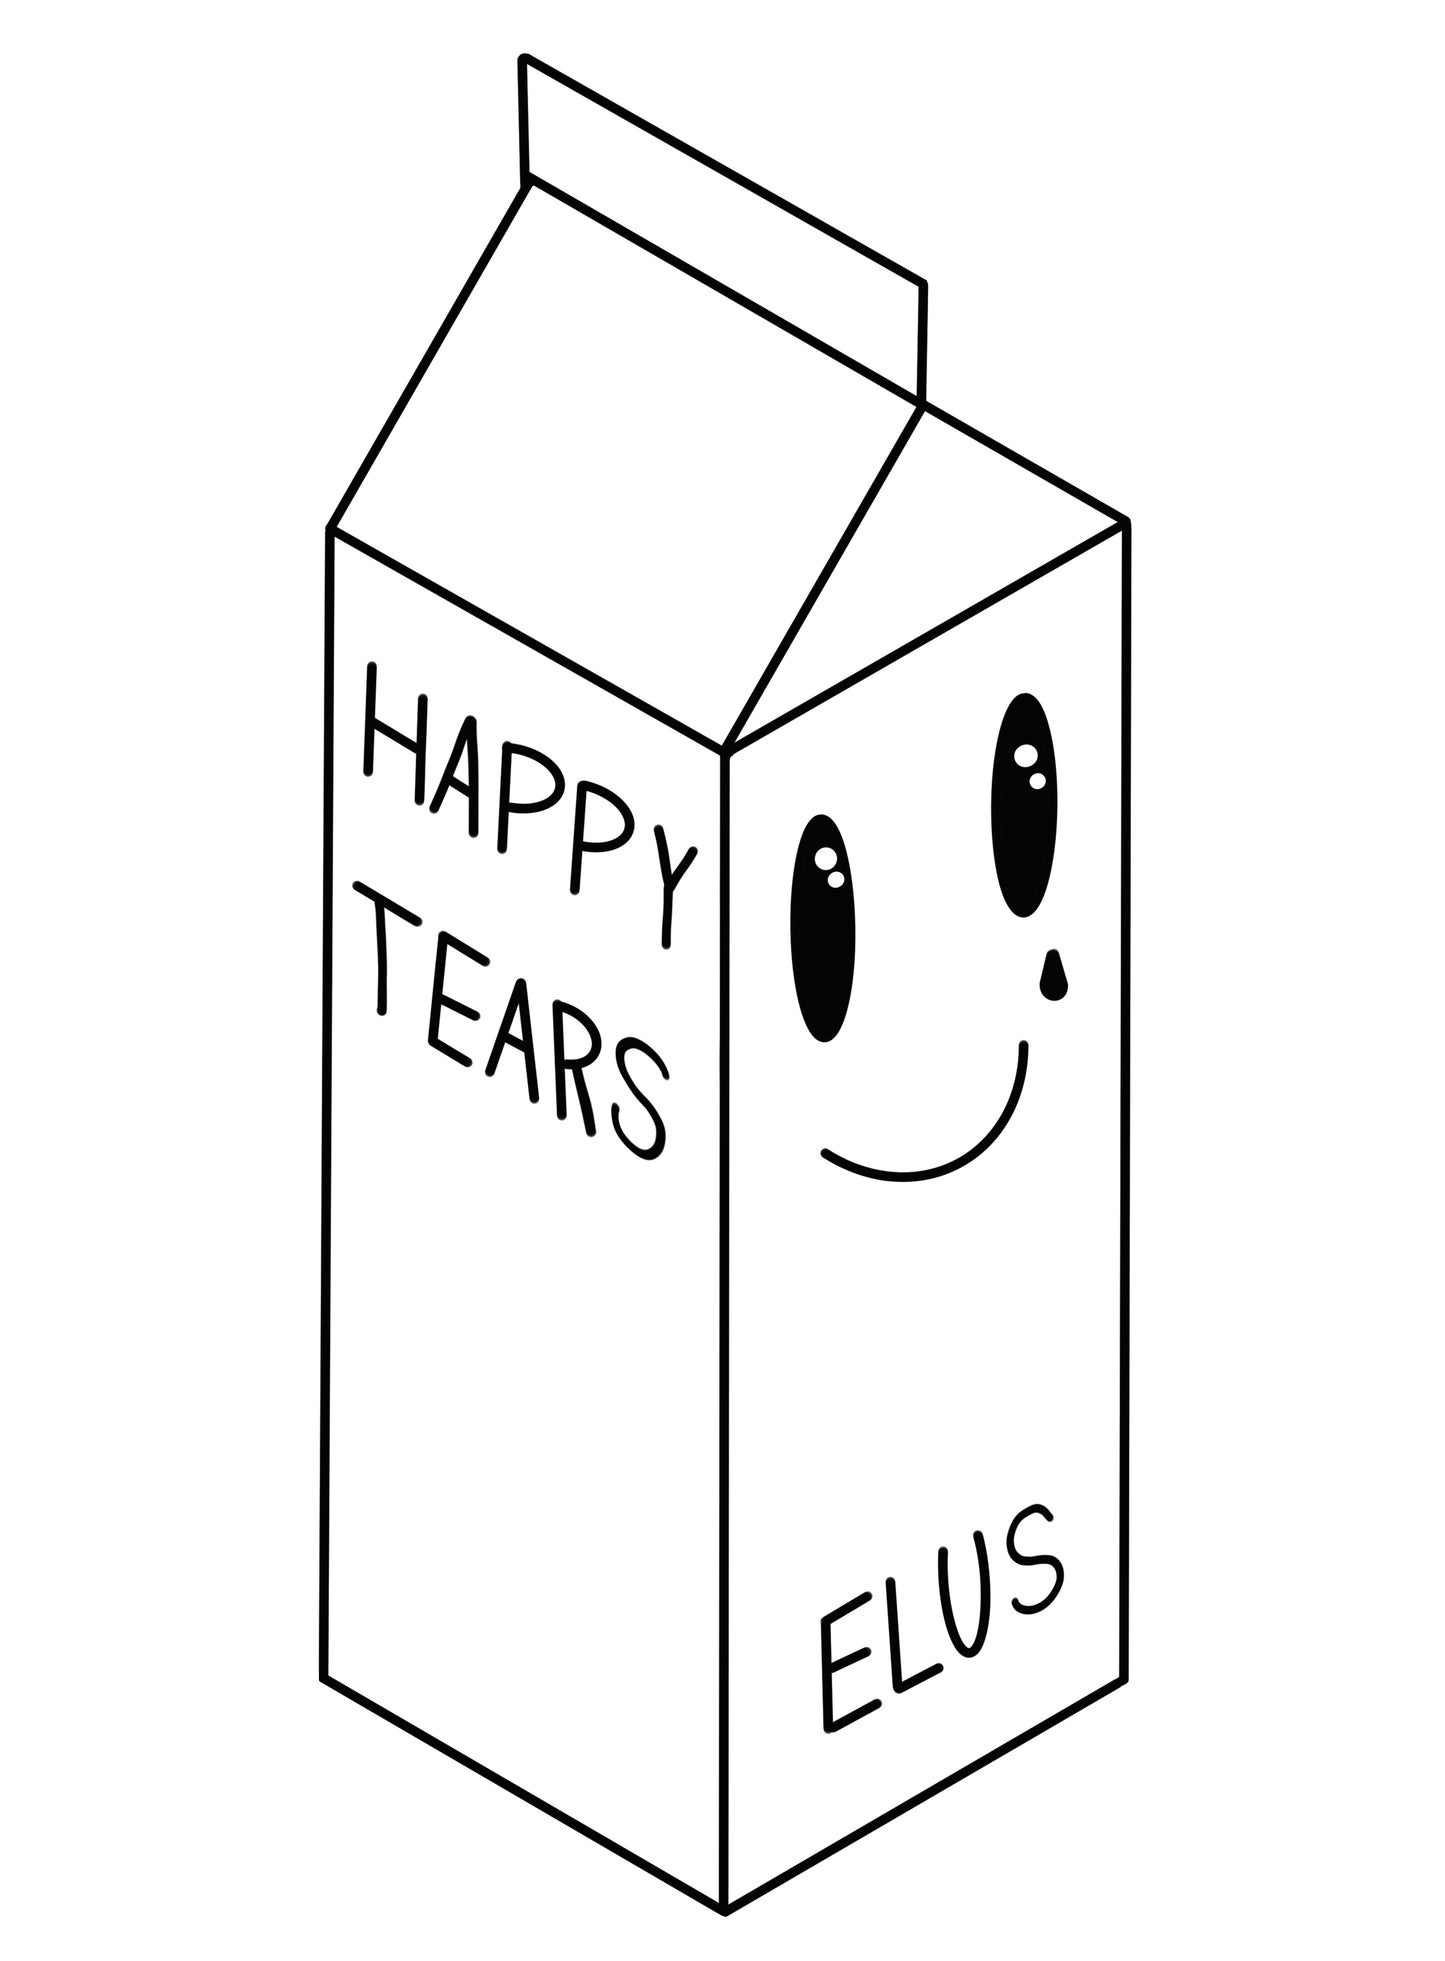 Tygkasse, Happy Tears